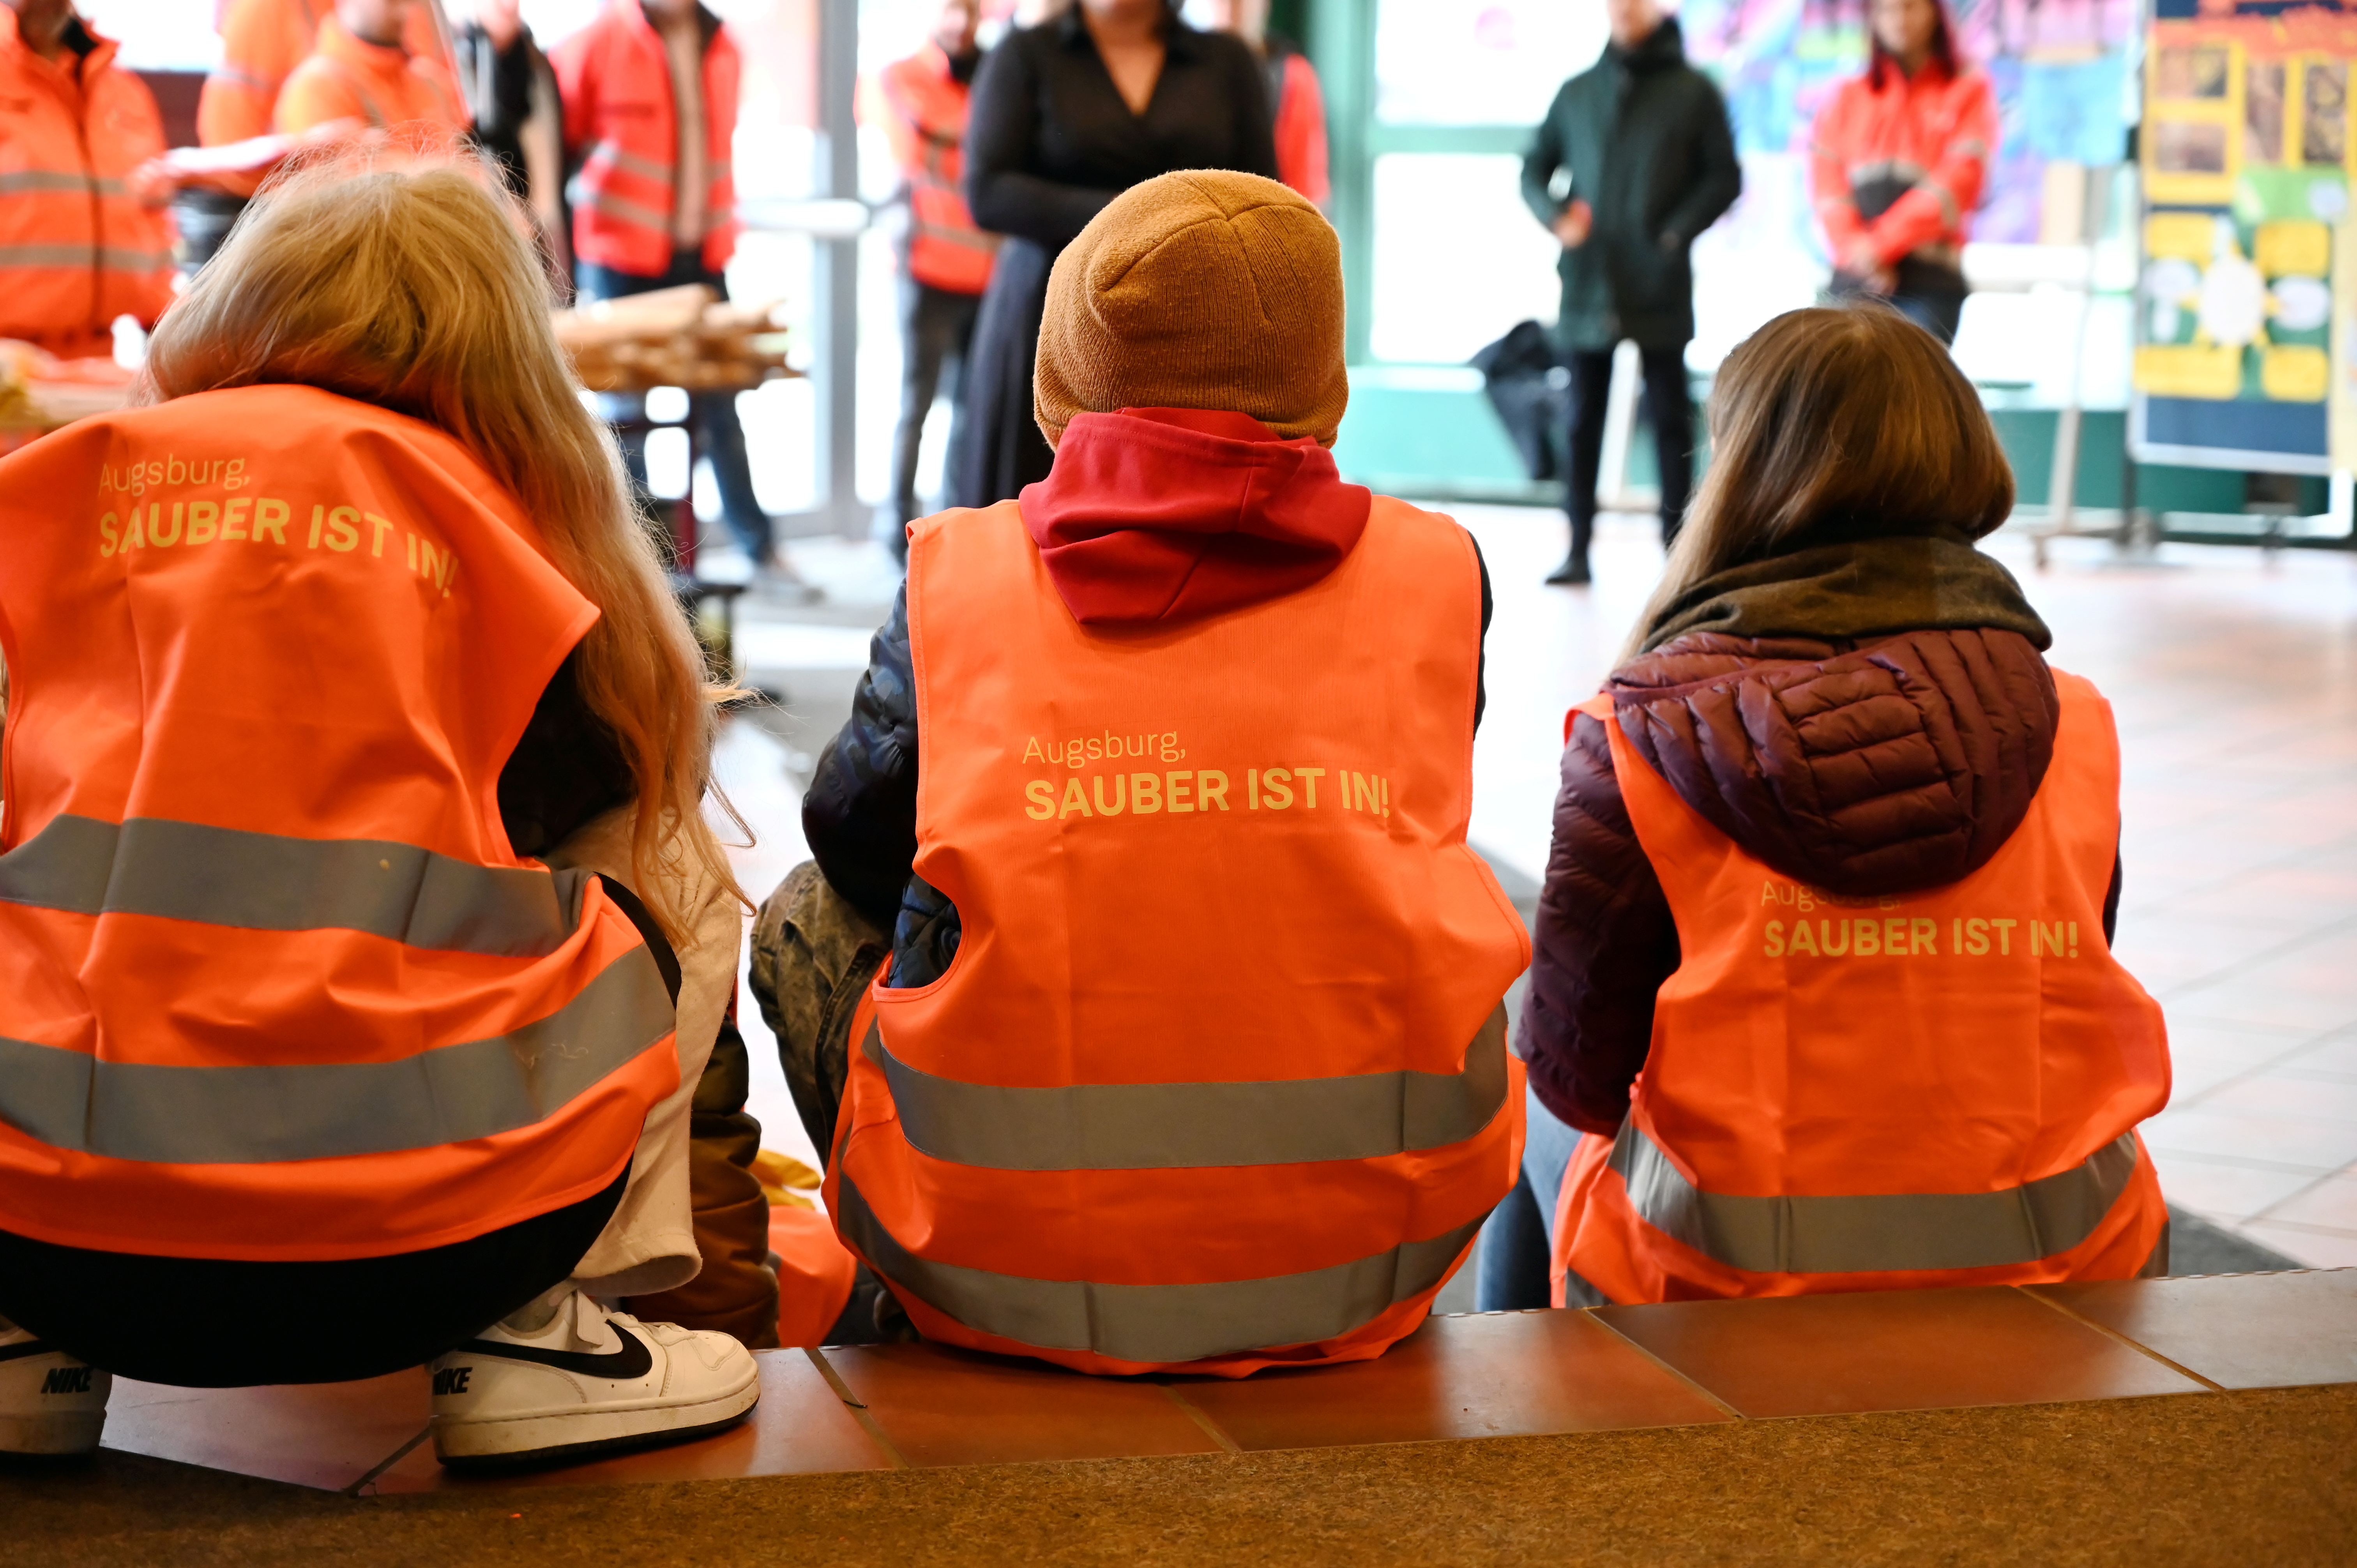 3 Kinder sitzen mit dem Rücken zum Betrachter nebeneinander; auf ihren Jacken steht "Sauber ist in"